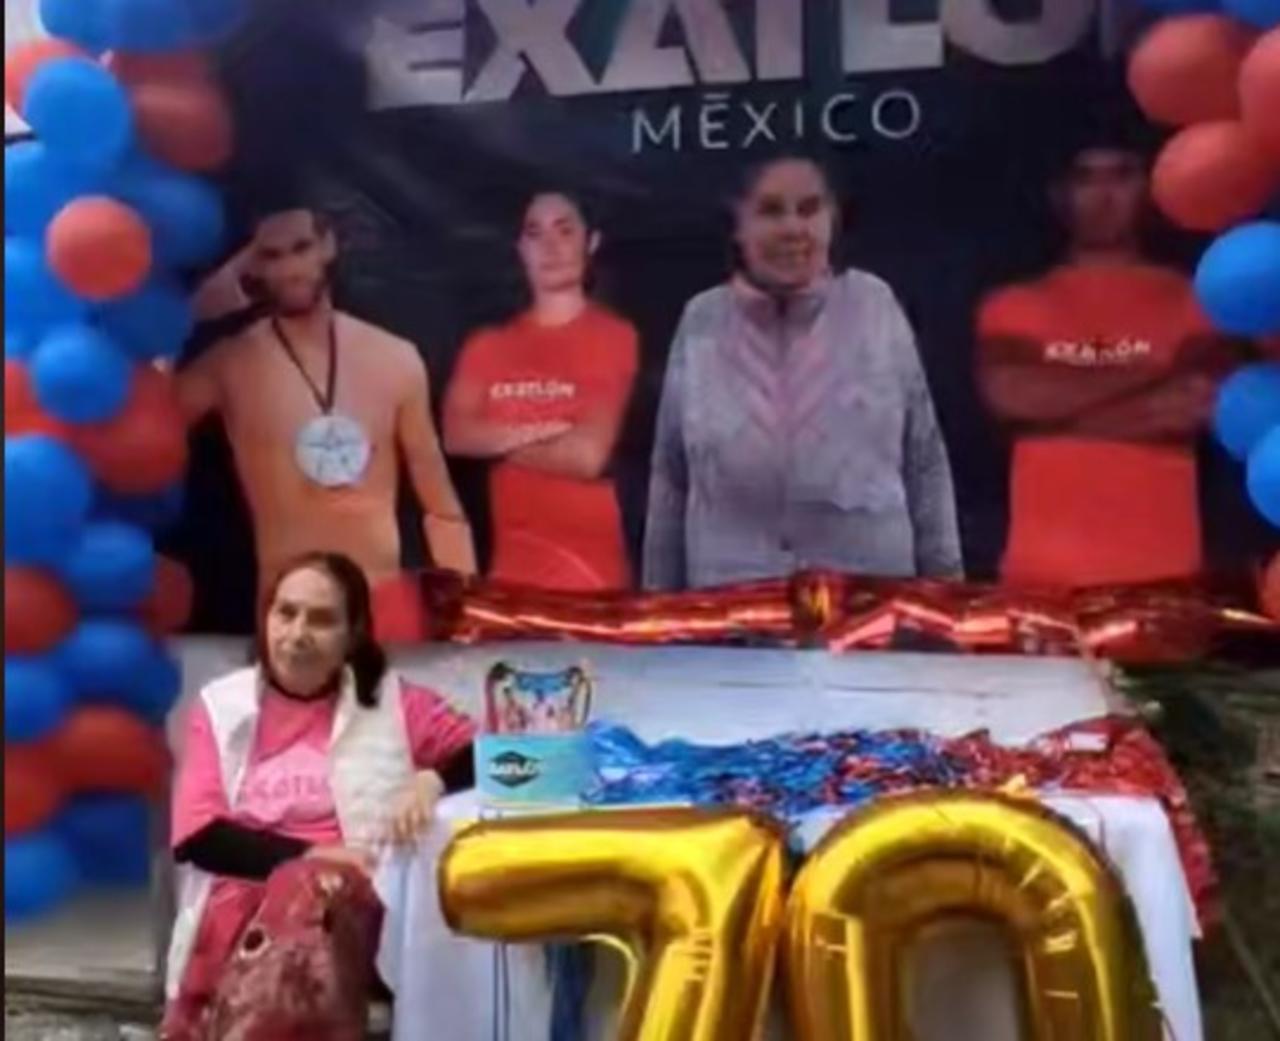 A través de TikTok se viralizó un video creado por una familia mexicana que decidió celebrar los 70 años de su abuelita con una fiesta temática de su programa favorito, Exatlón.